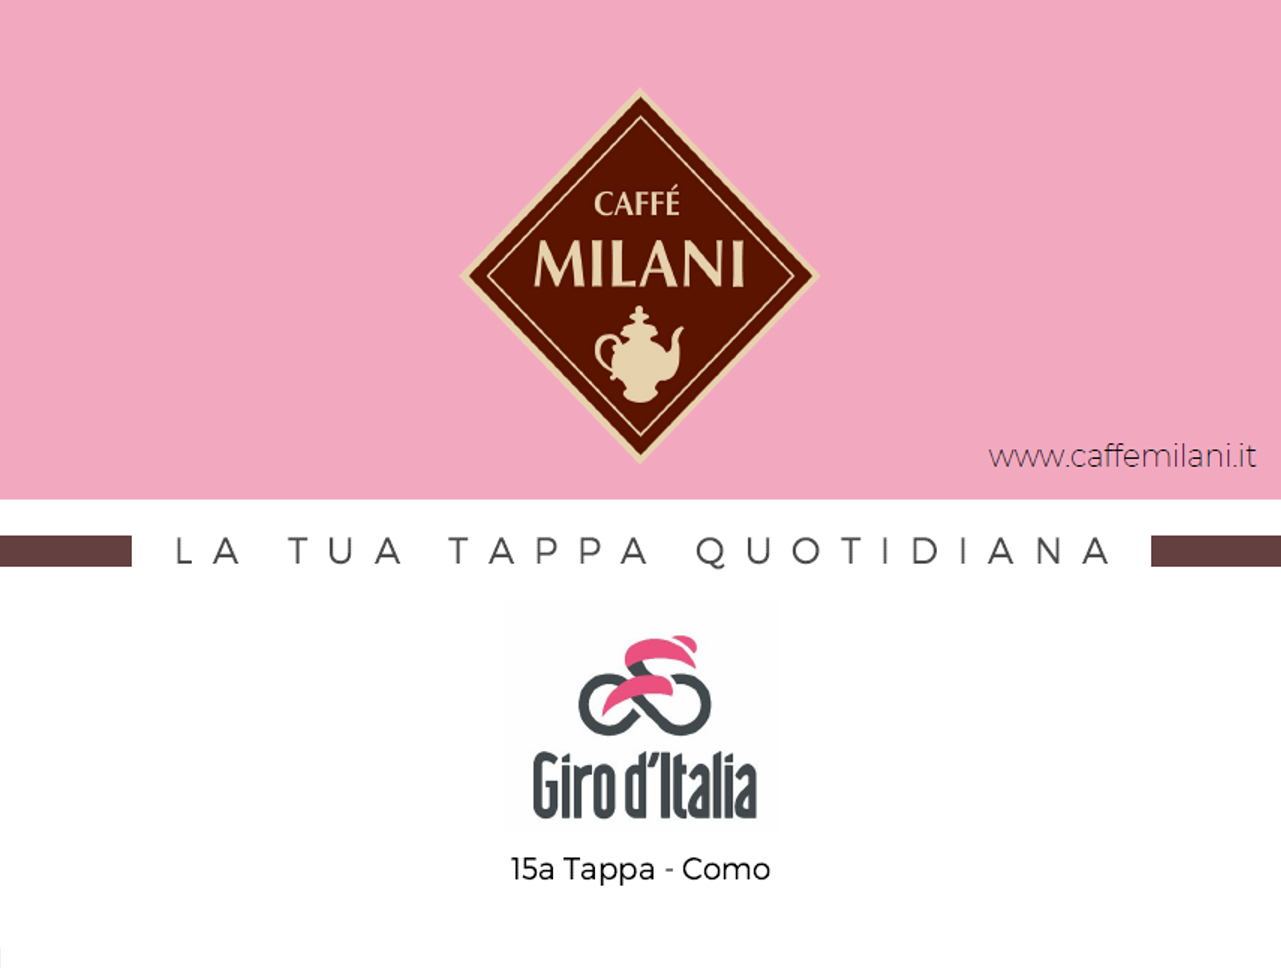 Milani Il claim di Caffè Milani per il Giro d'Italia